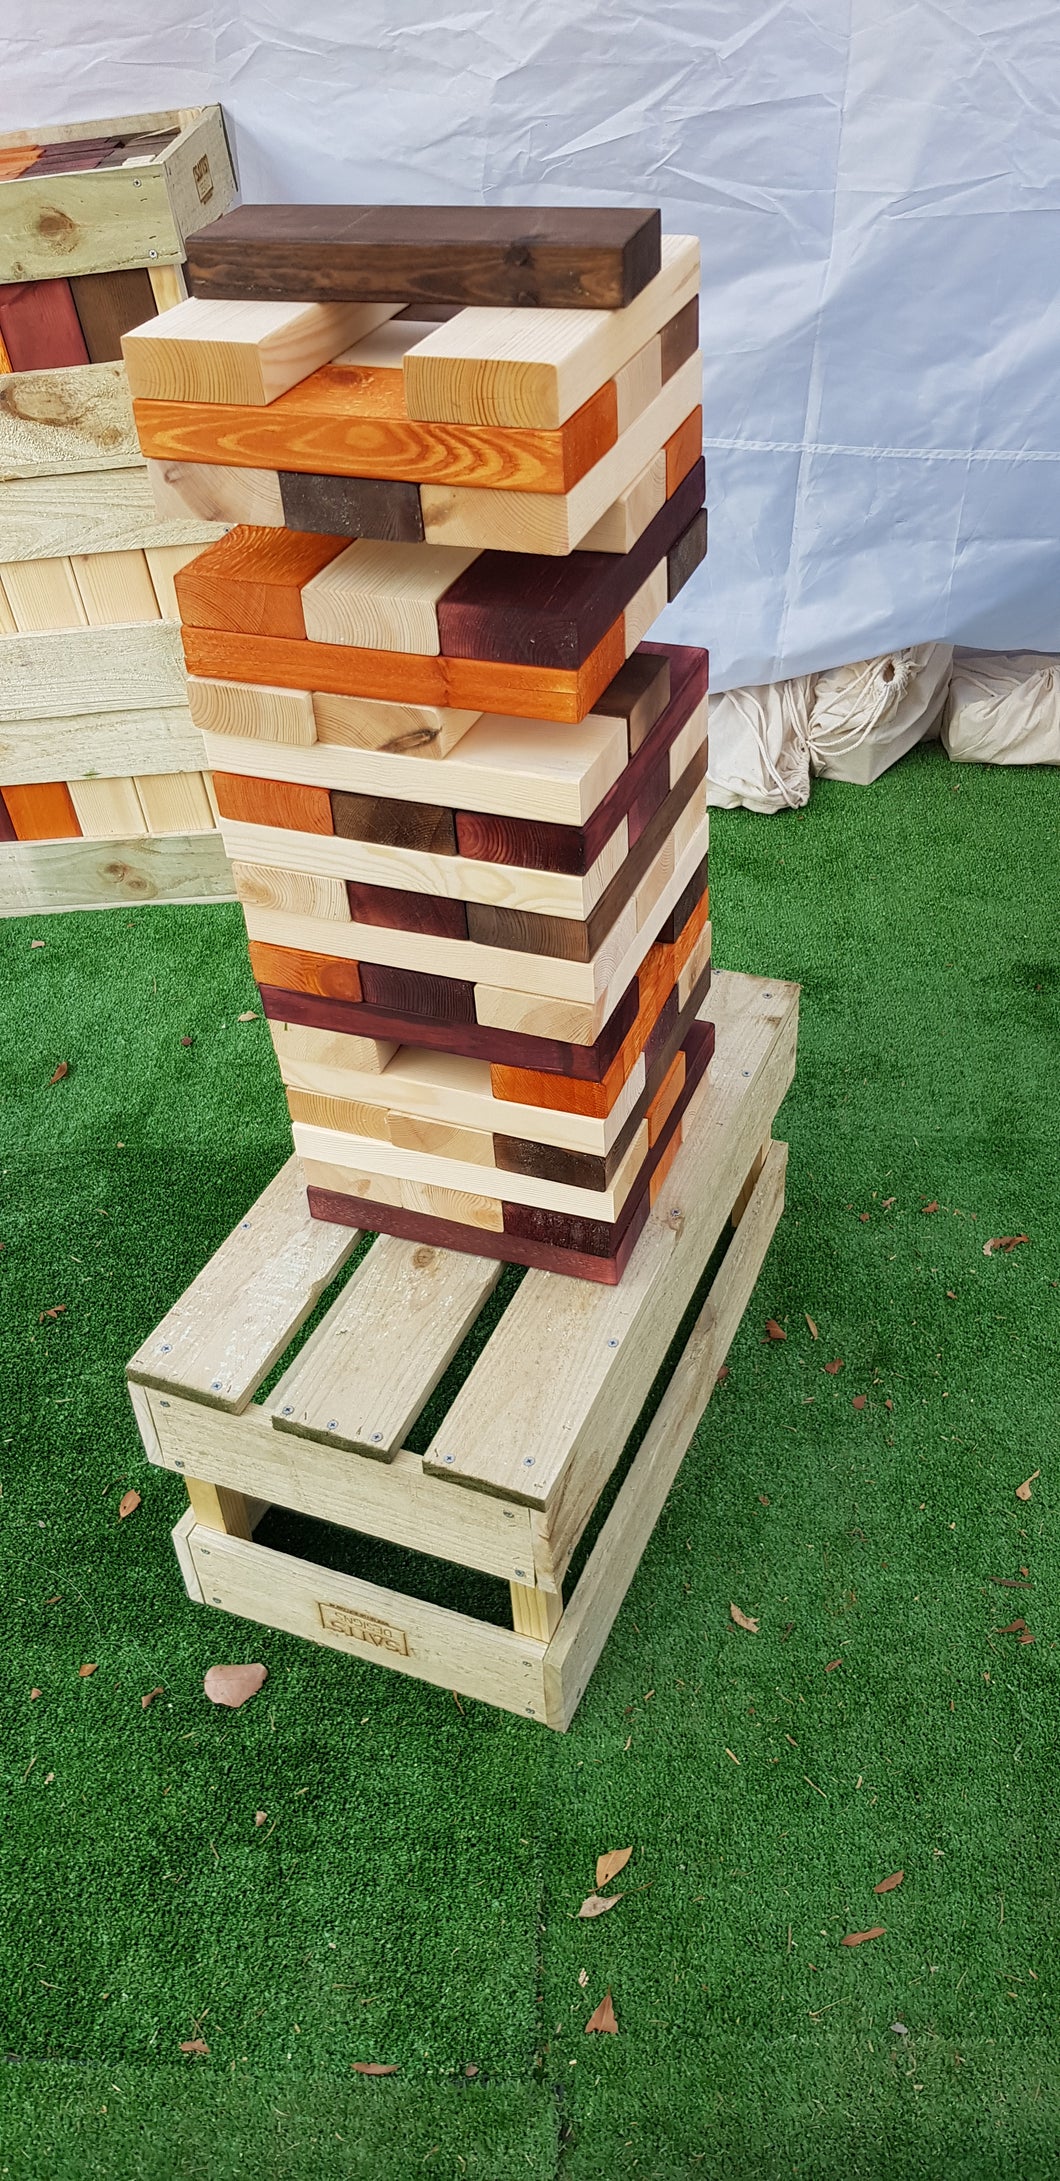 Giant Tumbling Tower Blocks Game